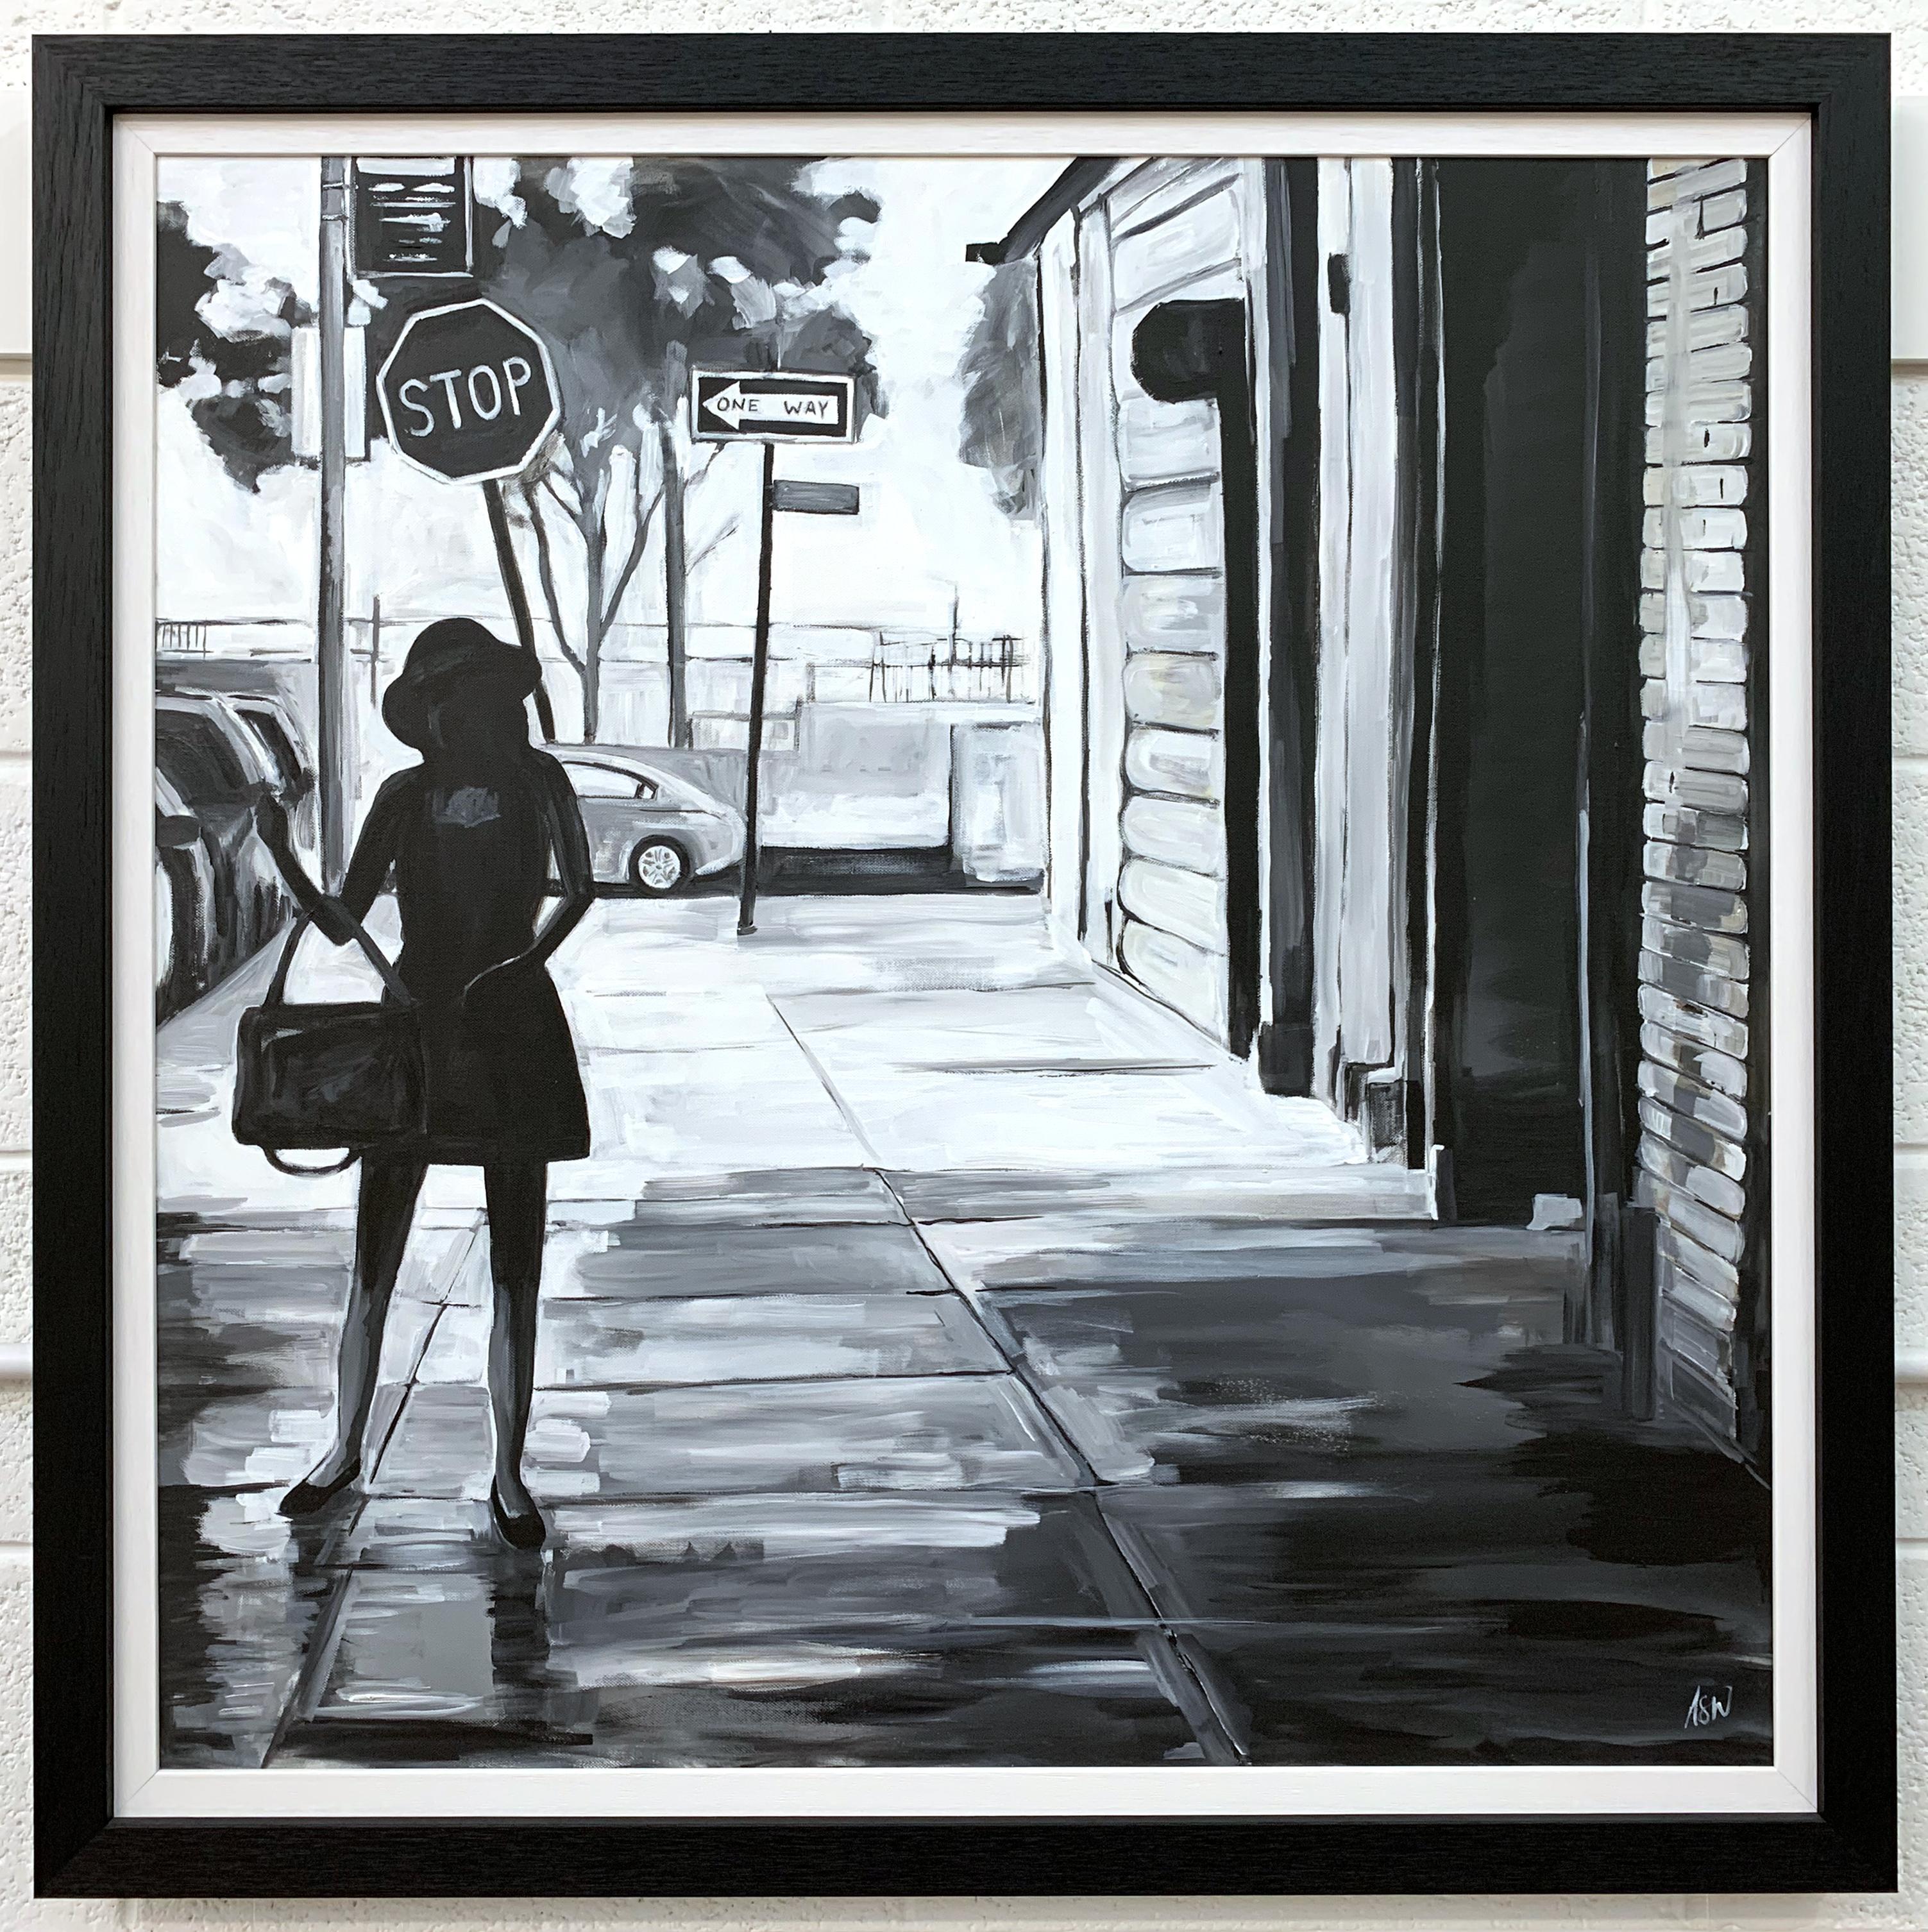 Scène de rue en noir et blanc représentant une femme à Manhattan, New York, réalisée par l'artiste britannique Angela Wakefield.

L'œuvre d'art mesure 36 x 36 pouces
Le cadre mesure 41 x 41 pouces

Angela Wakefield a fait deux fois la couverture de